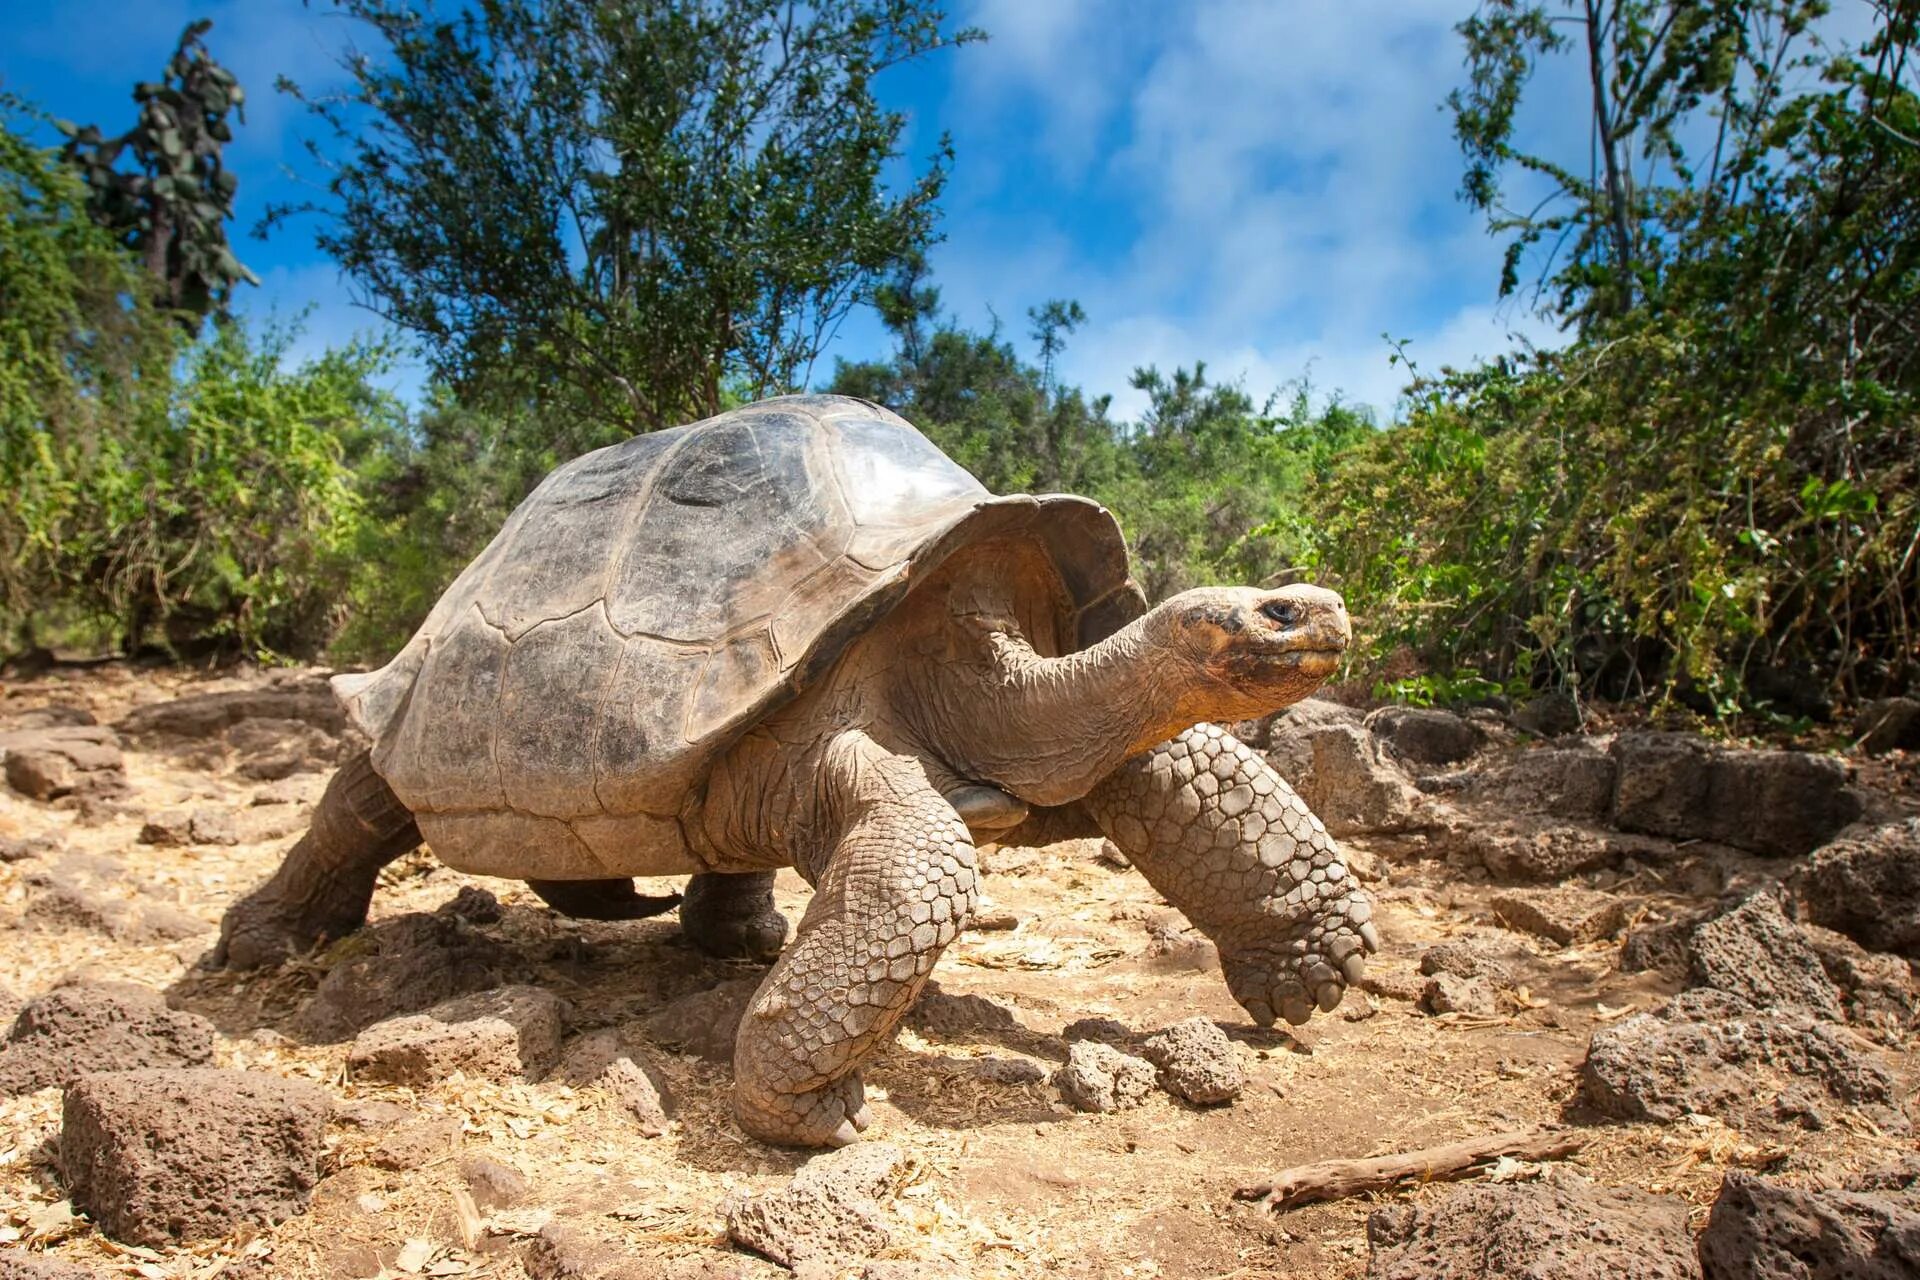 Галапагосская черепаха. Галапагосские острова черепахи. Галапагос — Эквадор черепахи. Галапагосская слоновая черепаха. Череп галапагосской черепахи